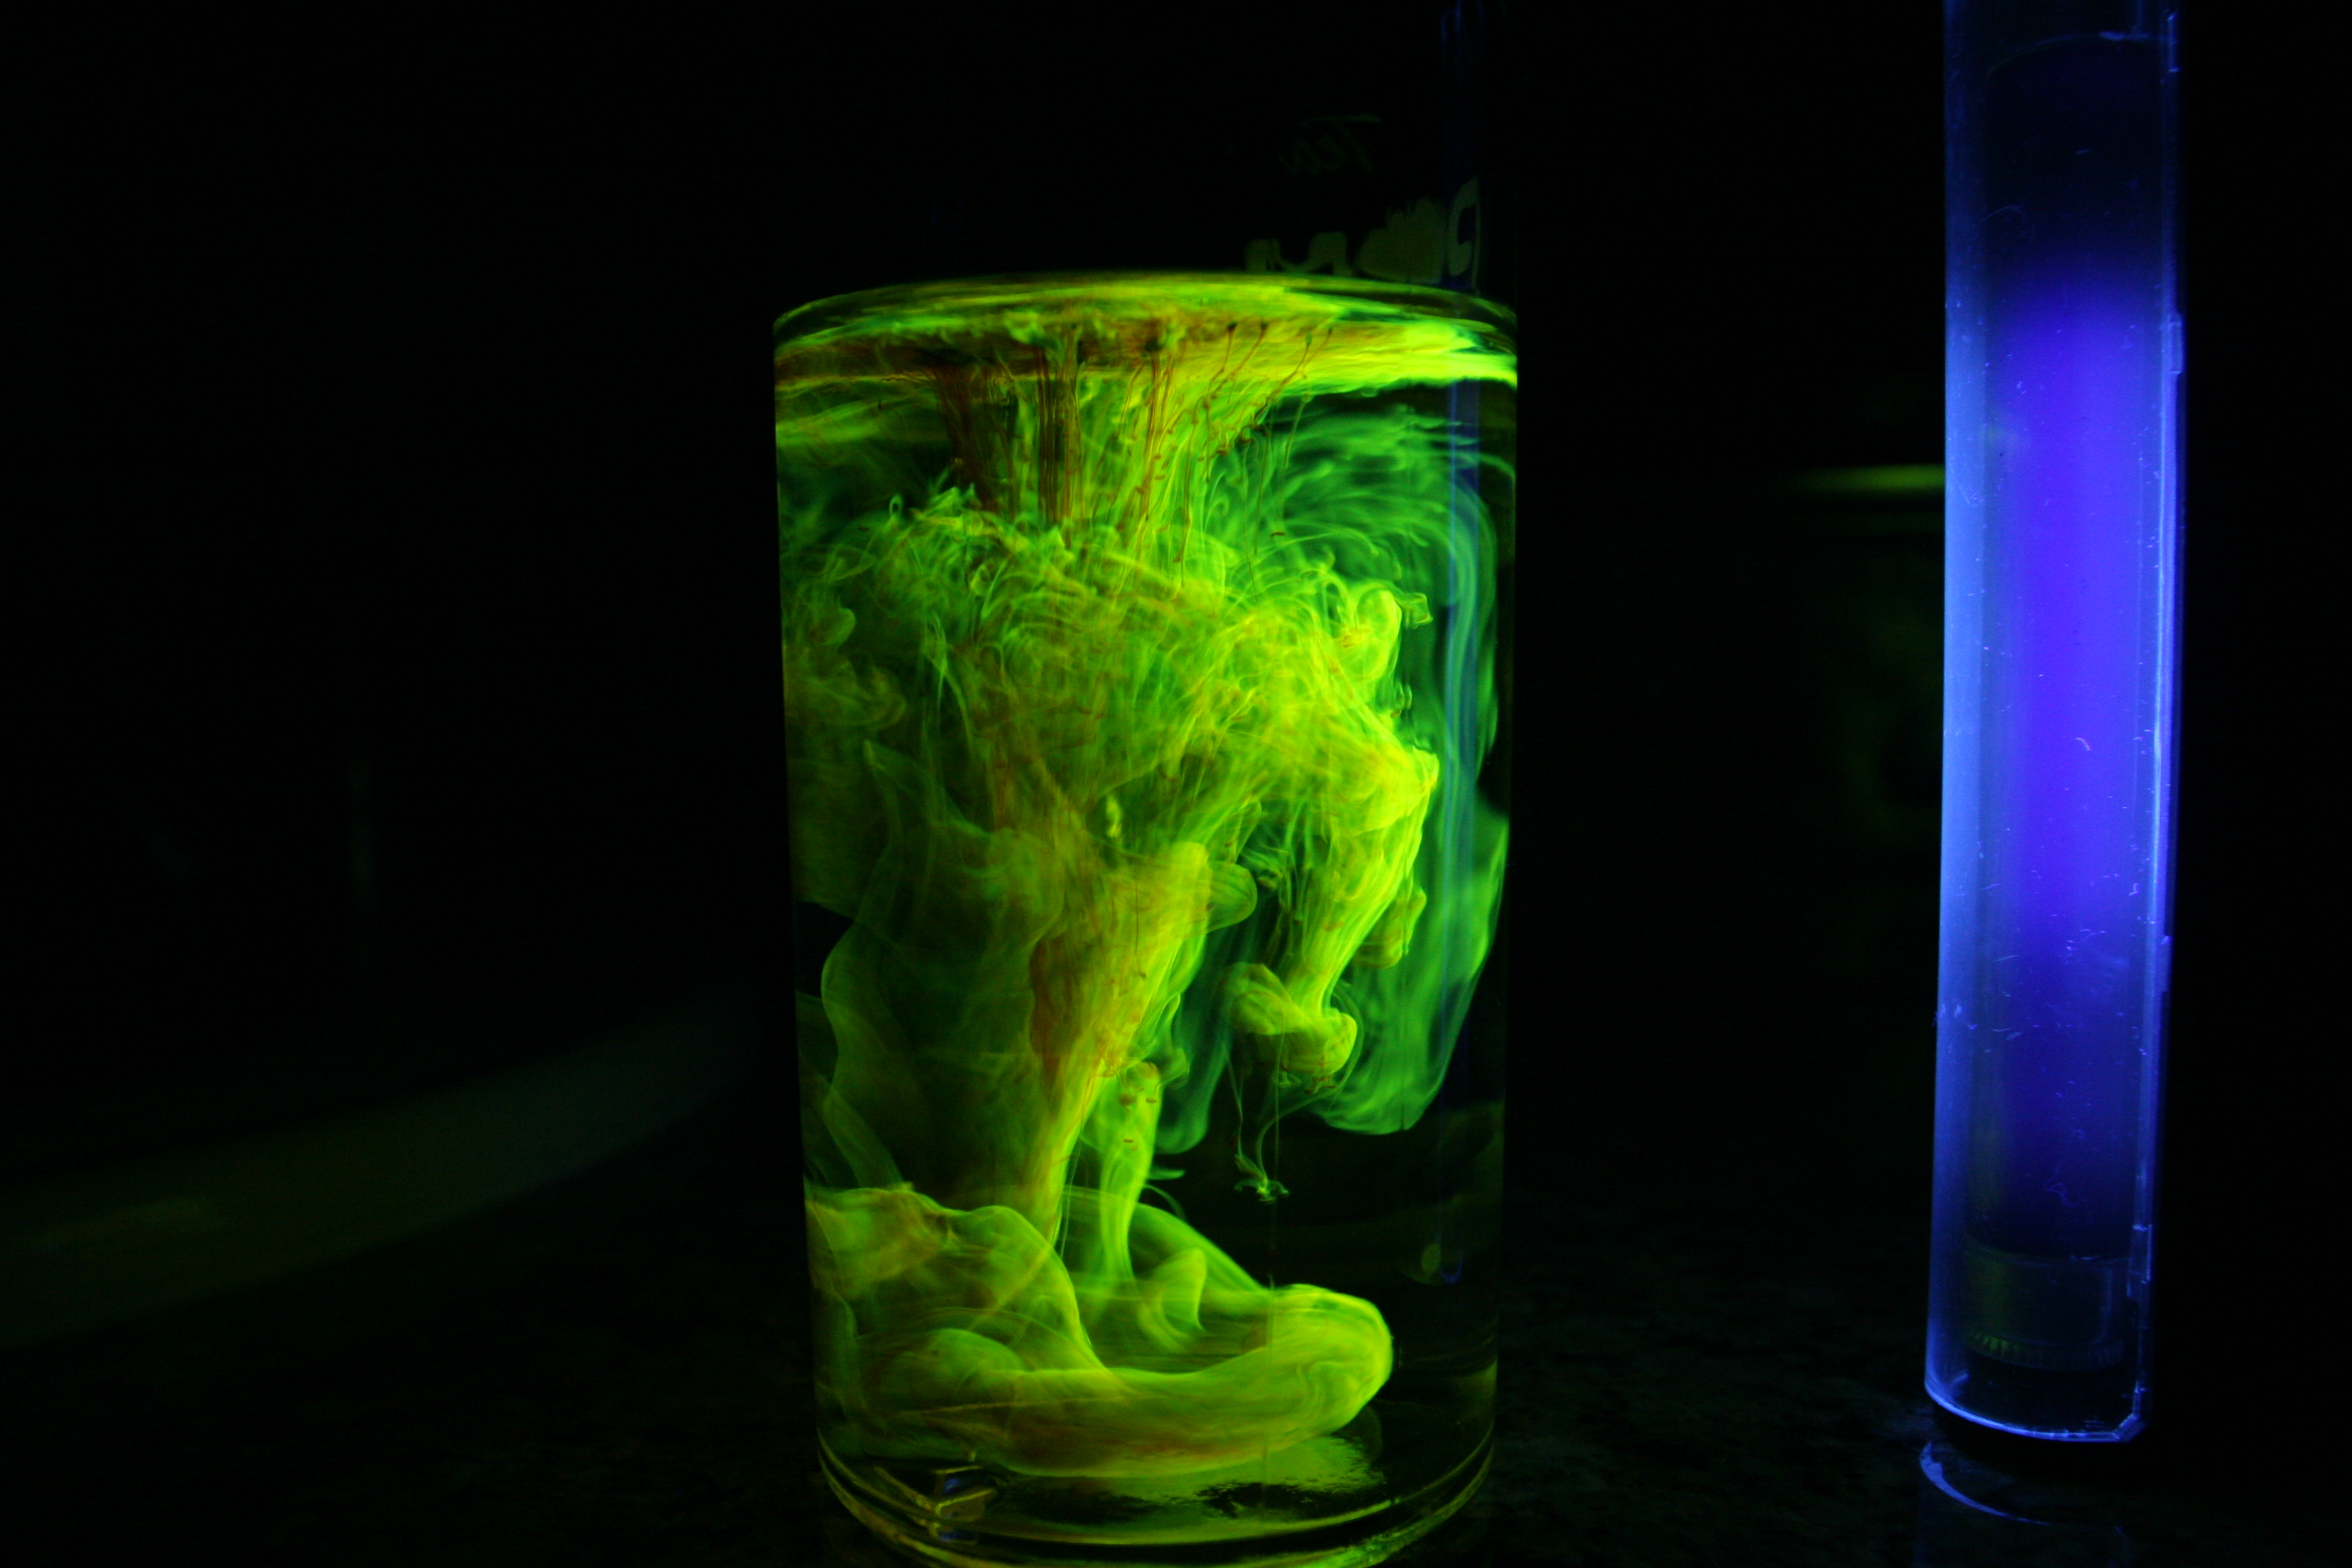 Fluorescein under UV illumination